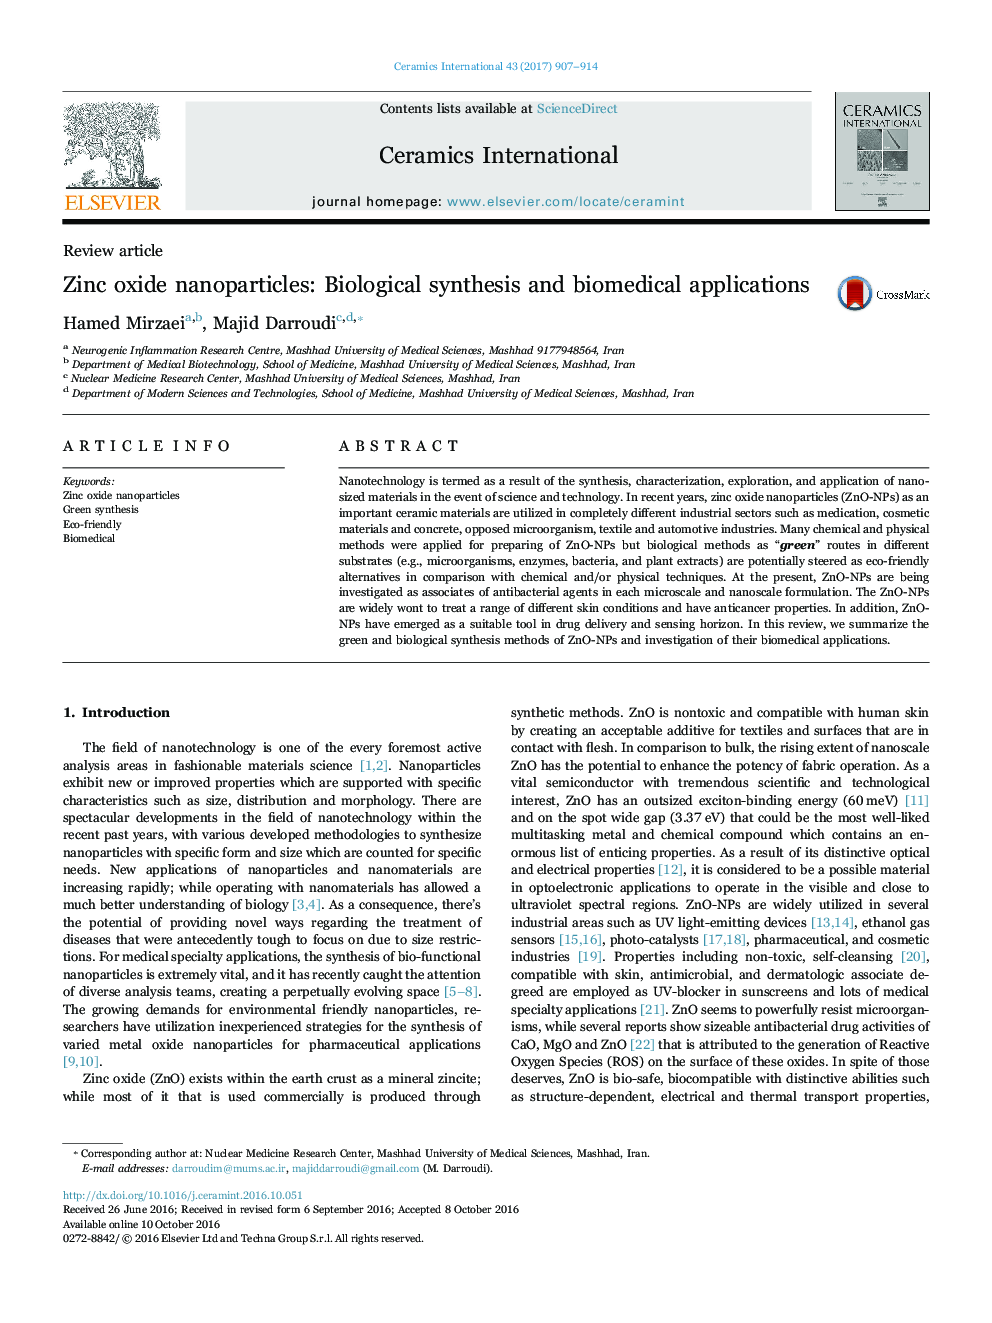 نانوذرات اکسید روی: سنتز بیولوژیکی و کاربردهای بیومدیکال 